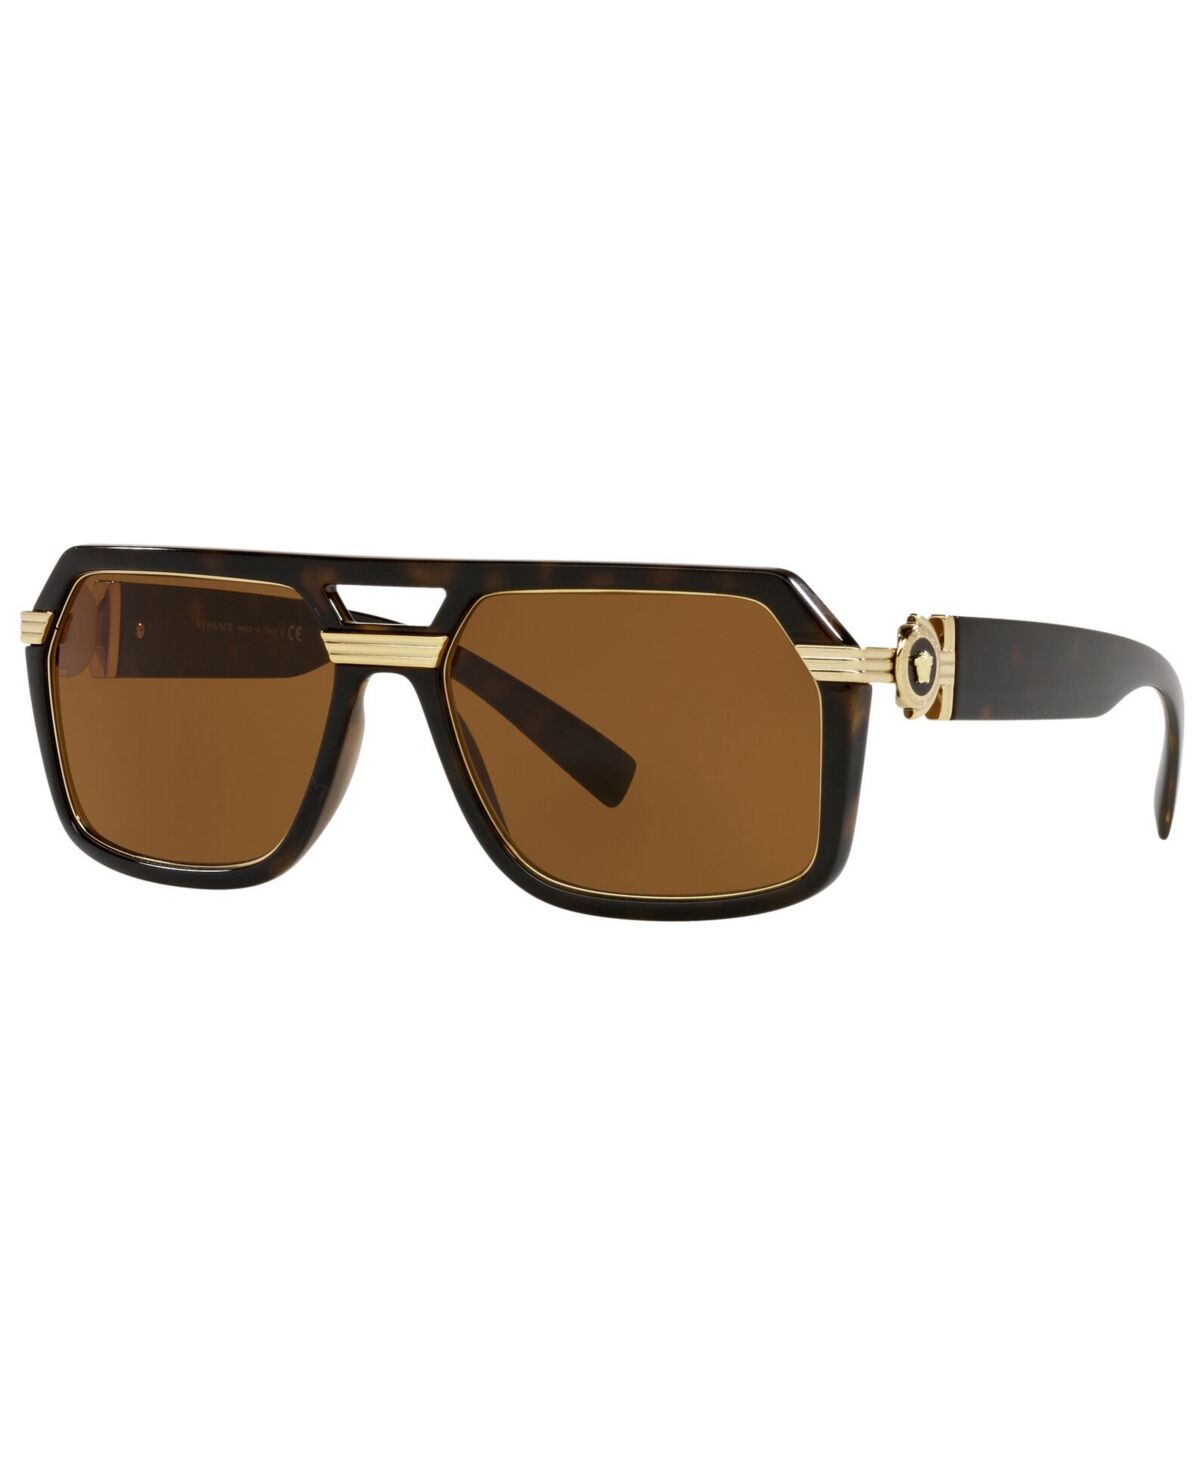 Versace Men's Sunglasses, VE4399 - HAVANA/DARK BROWN